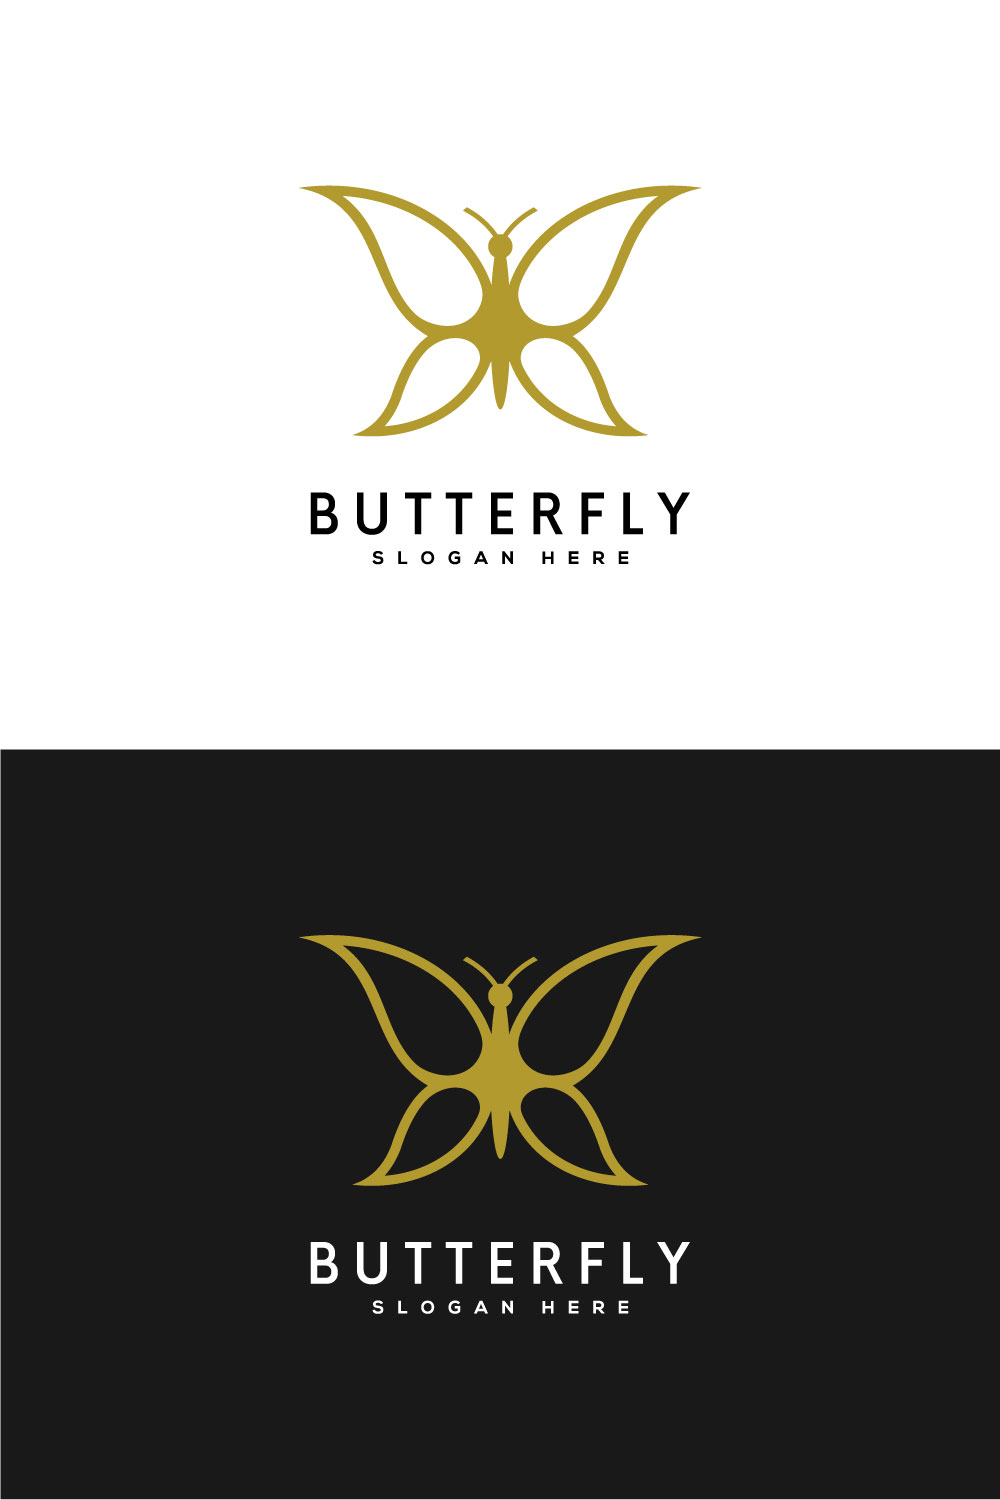 Butterfly Animal Logo Design pinterest.